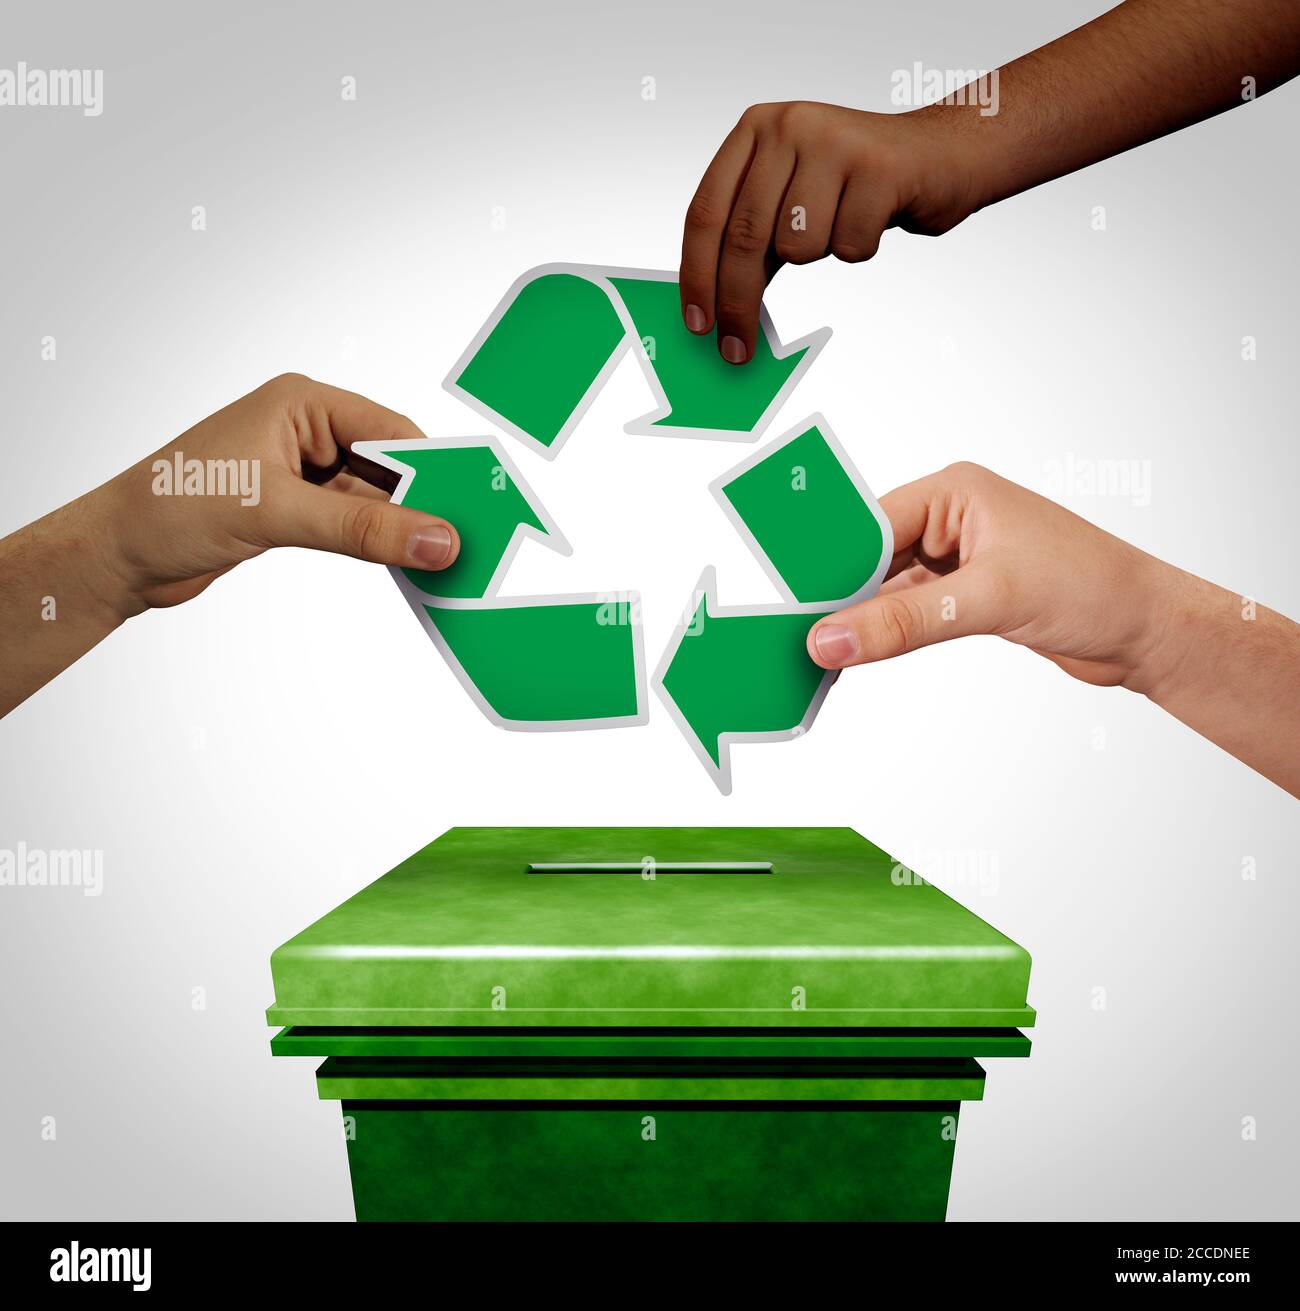 Umweltwahl mit verschiedenen Händen, die eine progressive grüne Stimme abgeben und erneuerbare Energie für die Erhaltung und Umweltpolitik. Stockfoto